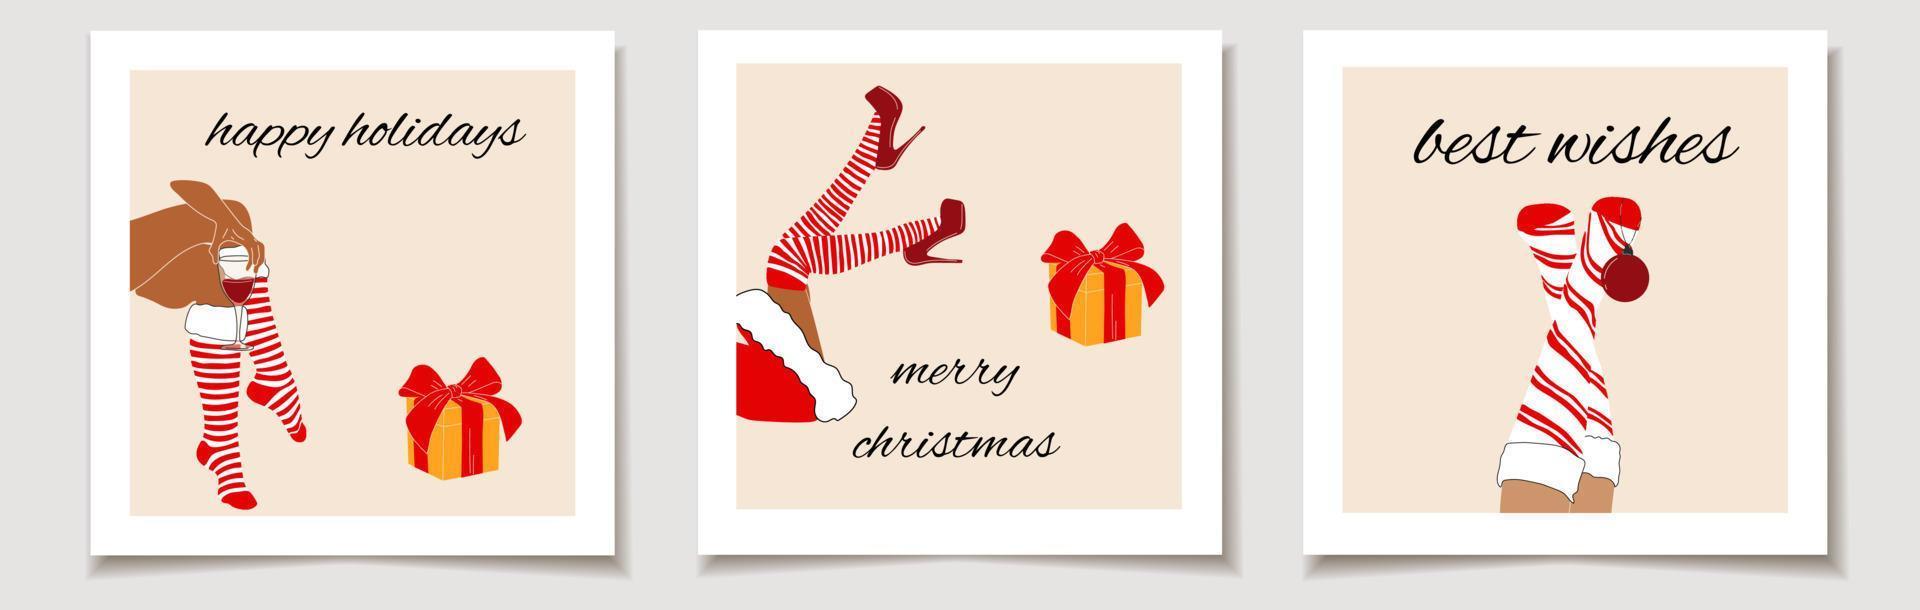 Weihnachten Vektor Geschenkkarte oder Tag Weihnachten Satz von drei Santa Frau Beine mit Weihnachtskugel, Geschenk und Wein. frohe weihnachten schriftzug, beste wünsche.